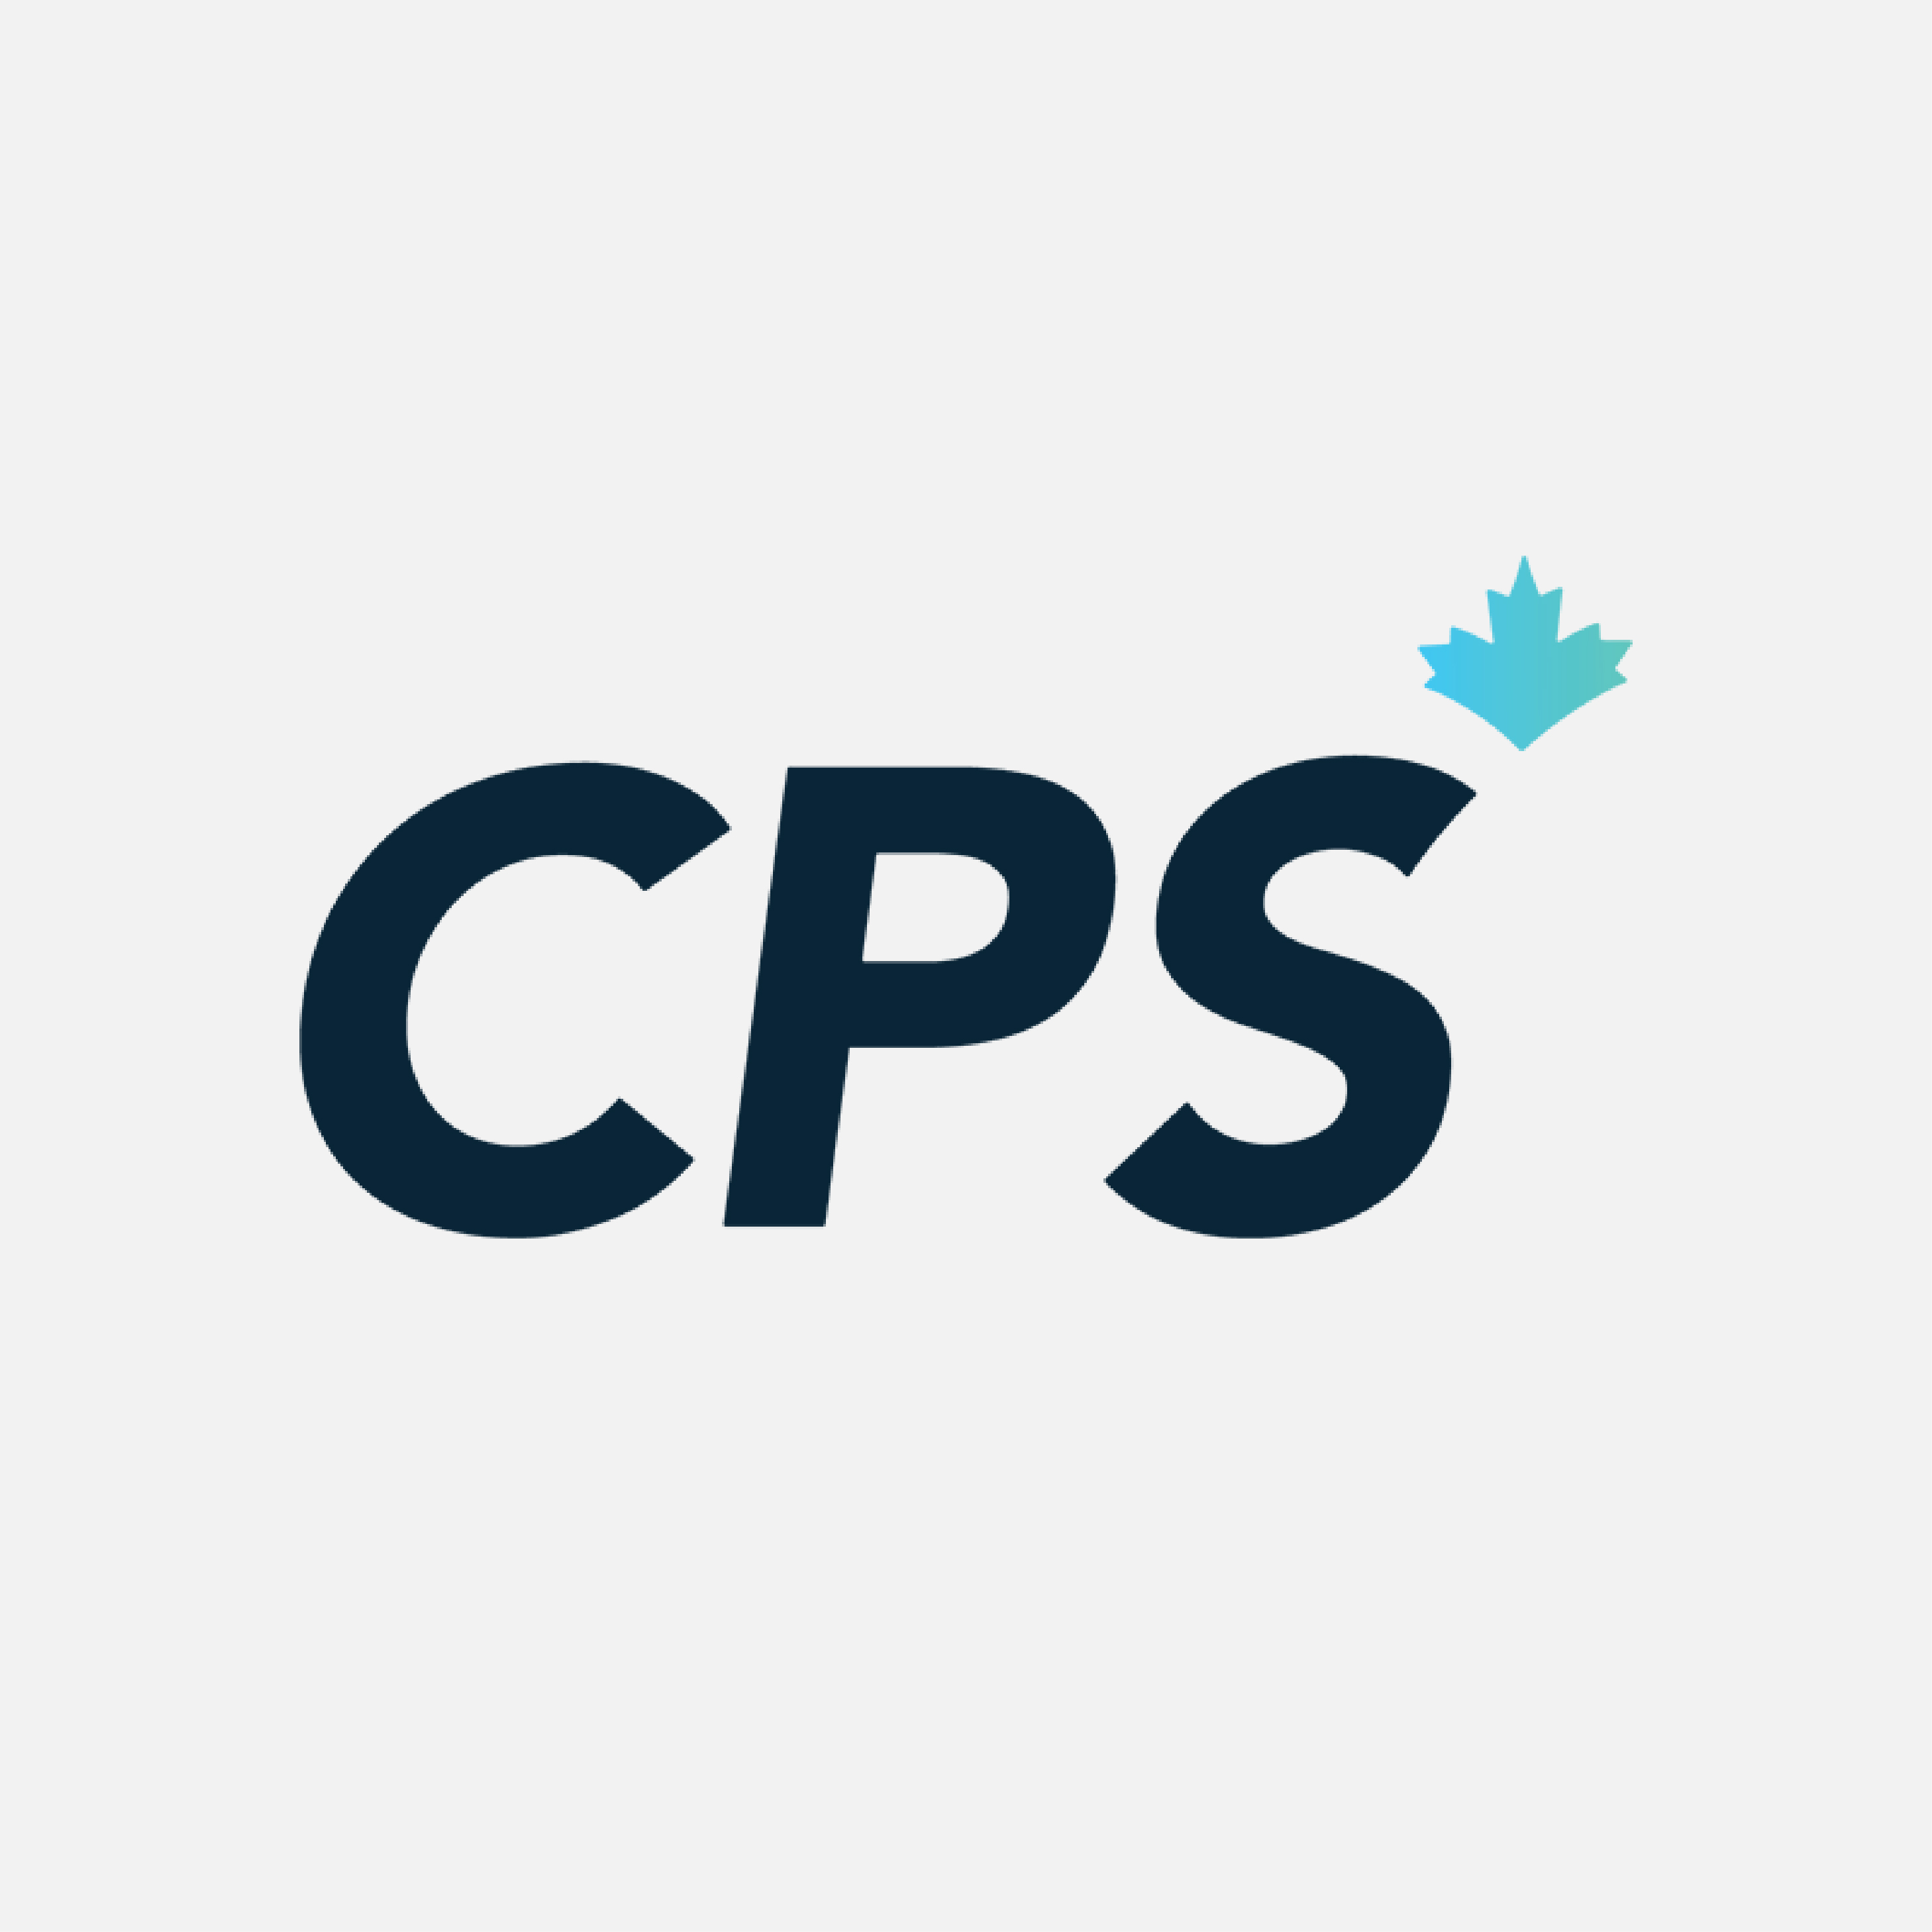 logo CPS : Compendium des produits et spécialités pharmaceutiques en ligne